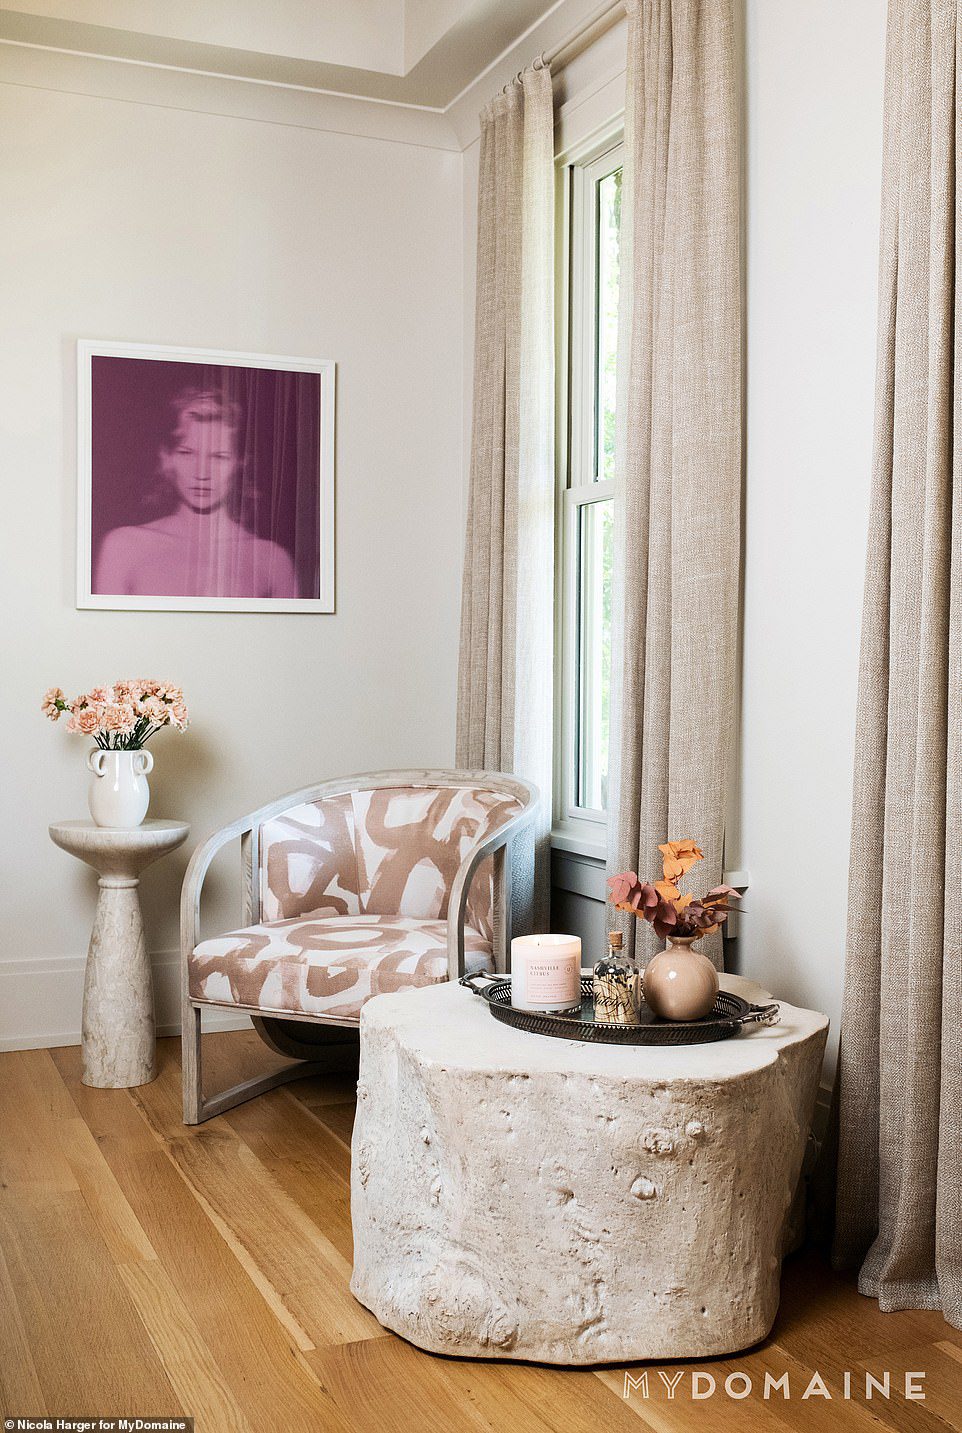 IHR BÜRO: Cavallaris Büro, in dem die blonde Schönheit Zoom-Meetings und Geschäftsangelegenheiten durchführt, ist ein ruhiger, neutral getönter Raum, komplett mit einem großen, rosa Porträt ihres berühmten Idols, Supermodel Kate Moss.